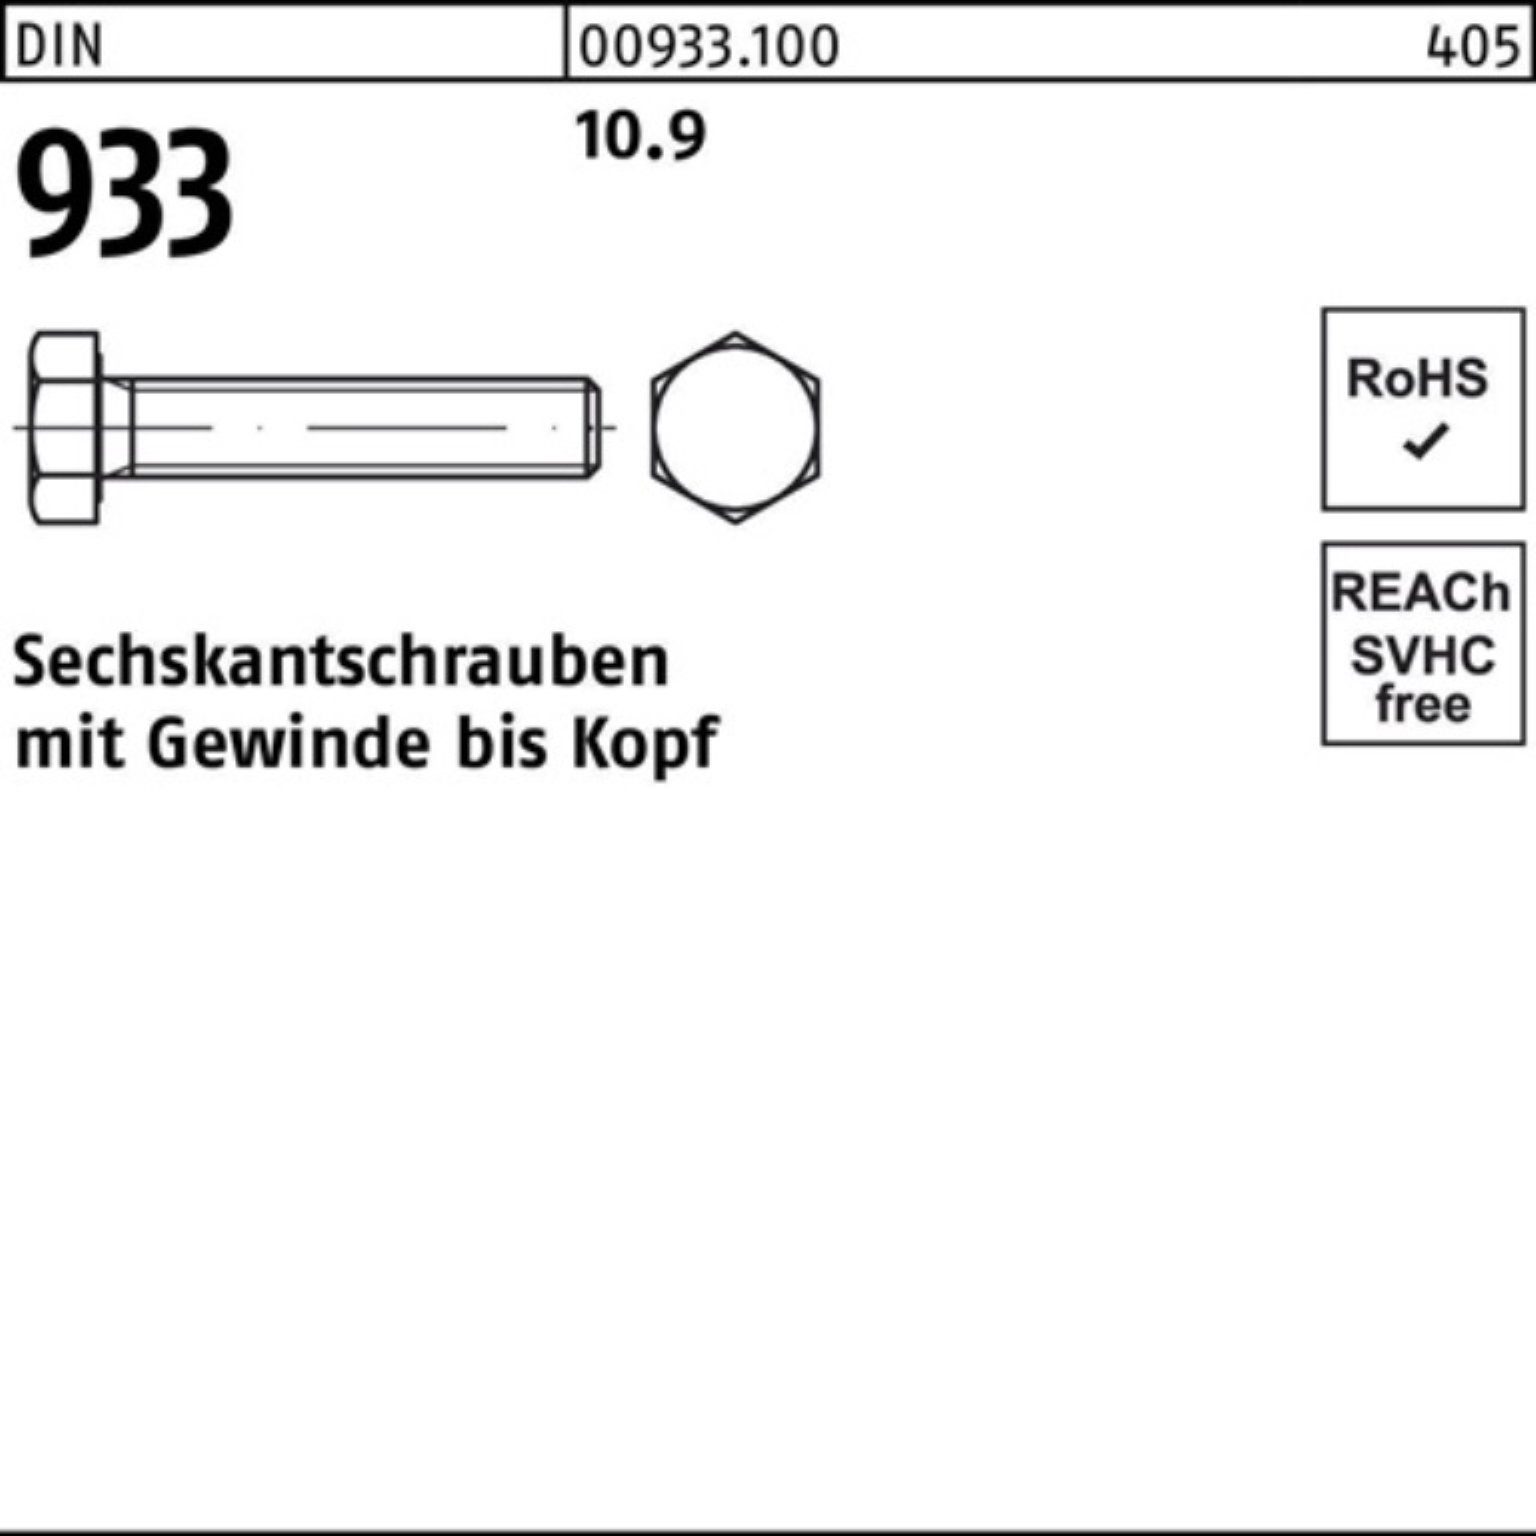 Sechskantschraube 933 10.9 933 55 Stück VG DIN DIN Reyher Sechskantschraube 100er M18x Pack 25